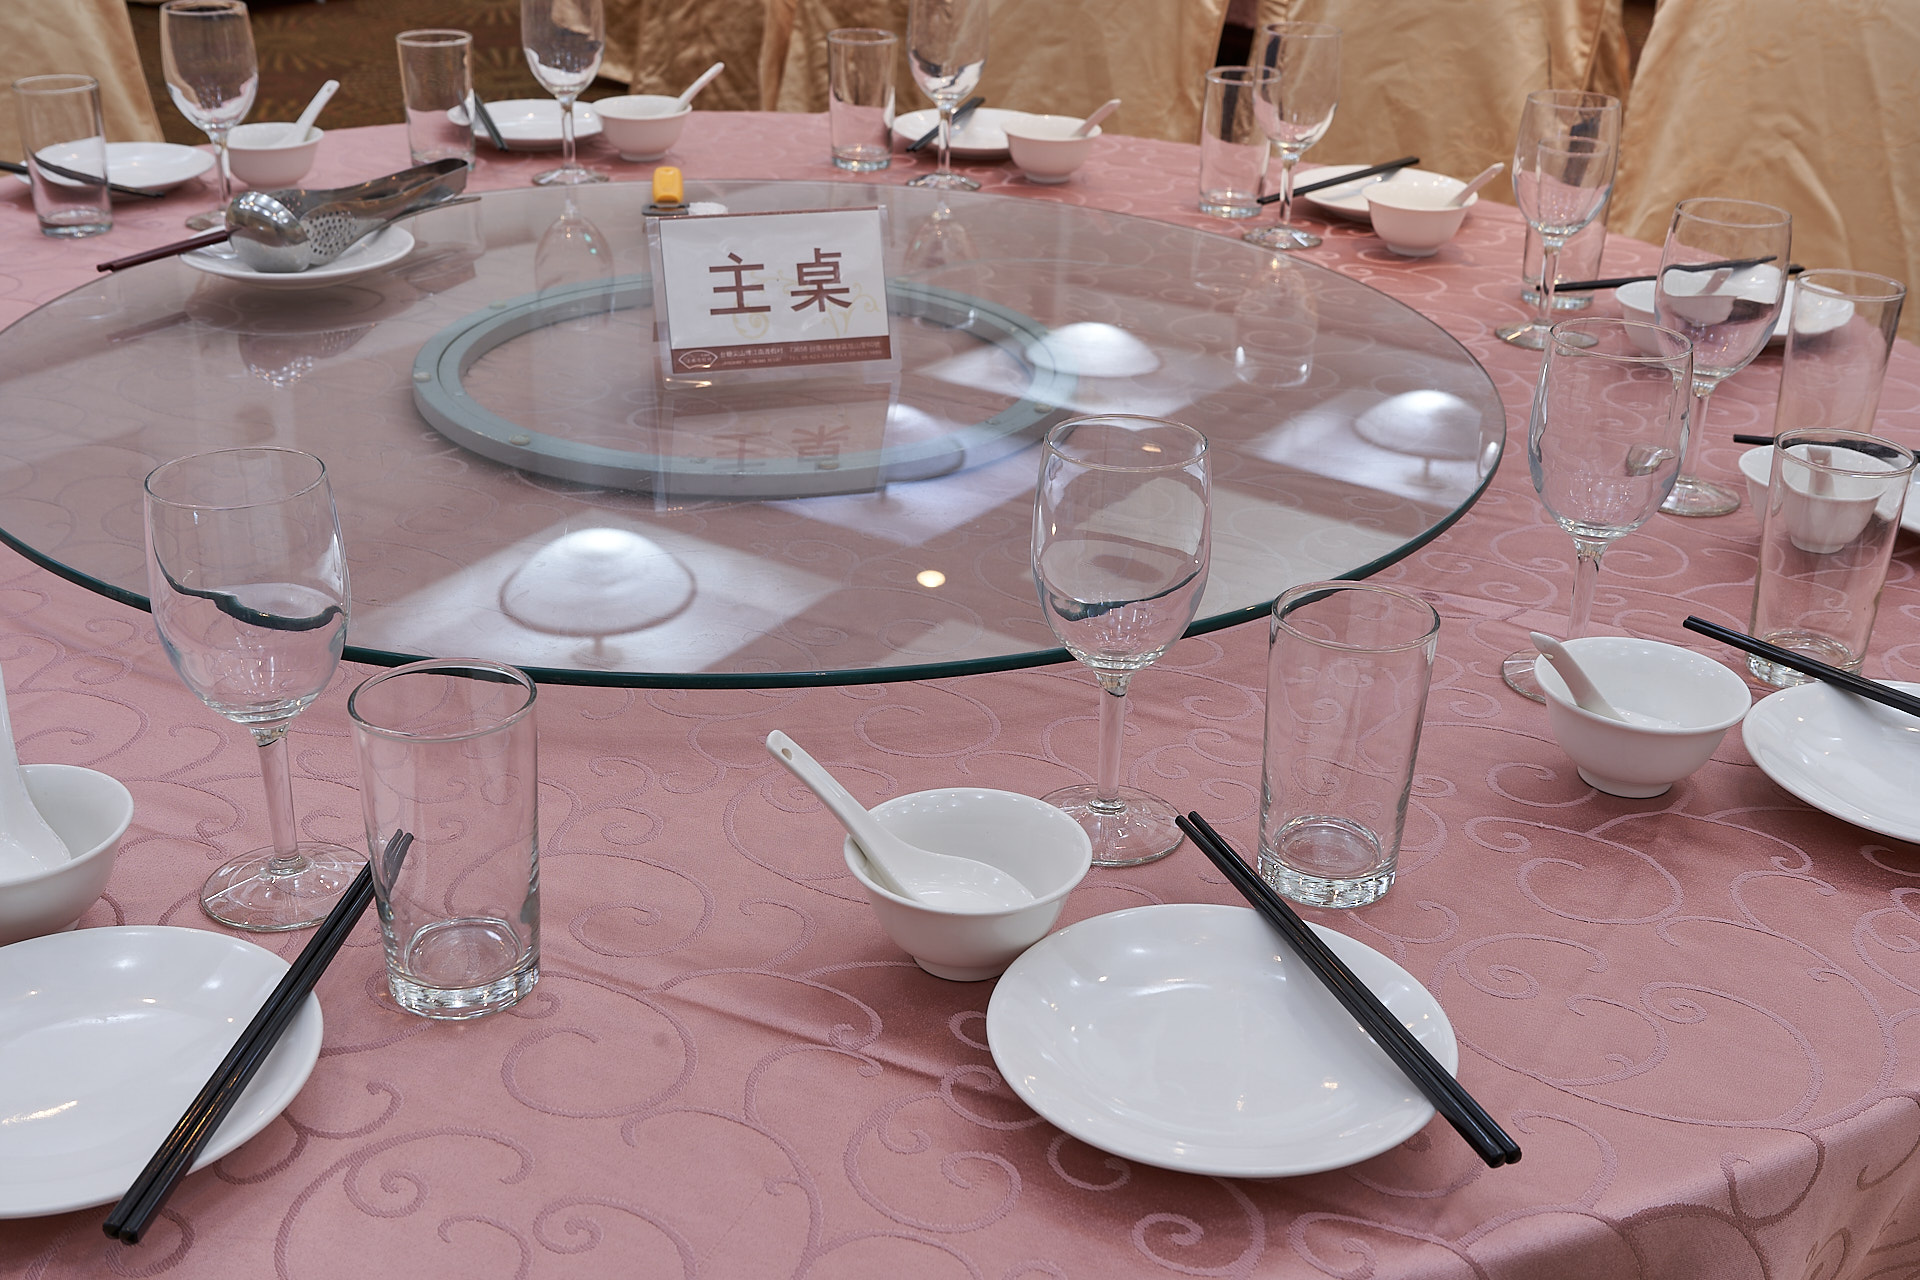 宴會廳內部布置-宴會型主桌桌面擺設近拍